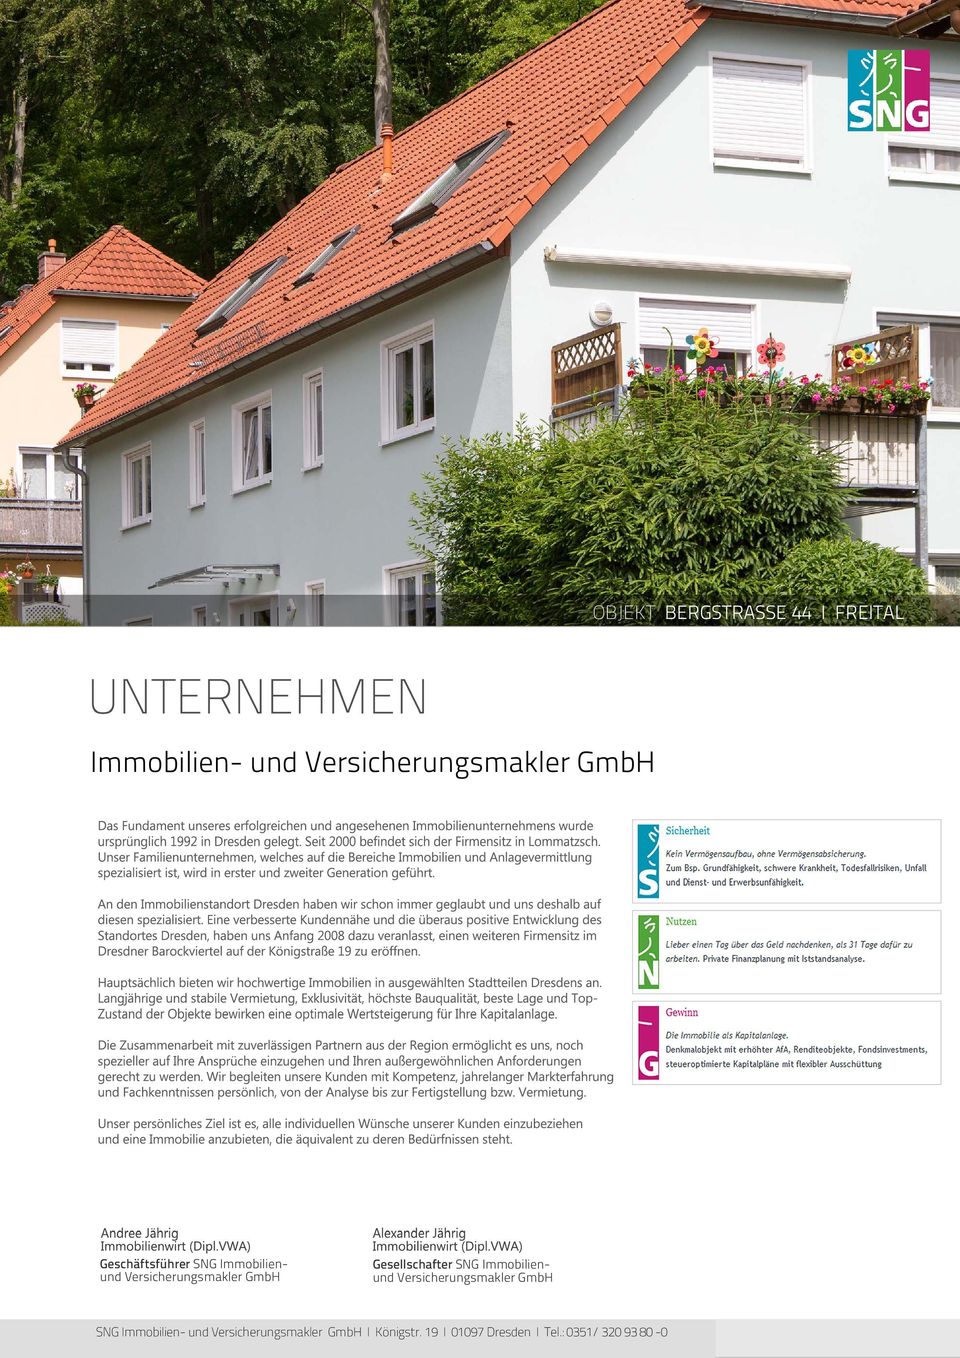 Immobilienund Versicherungsmakler GmbH